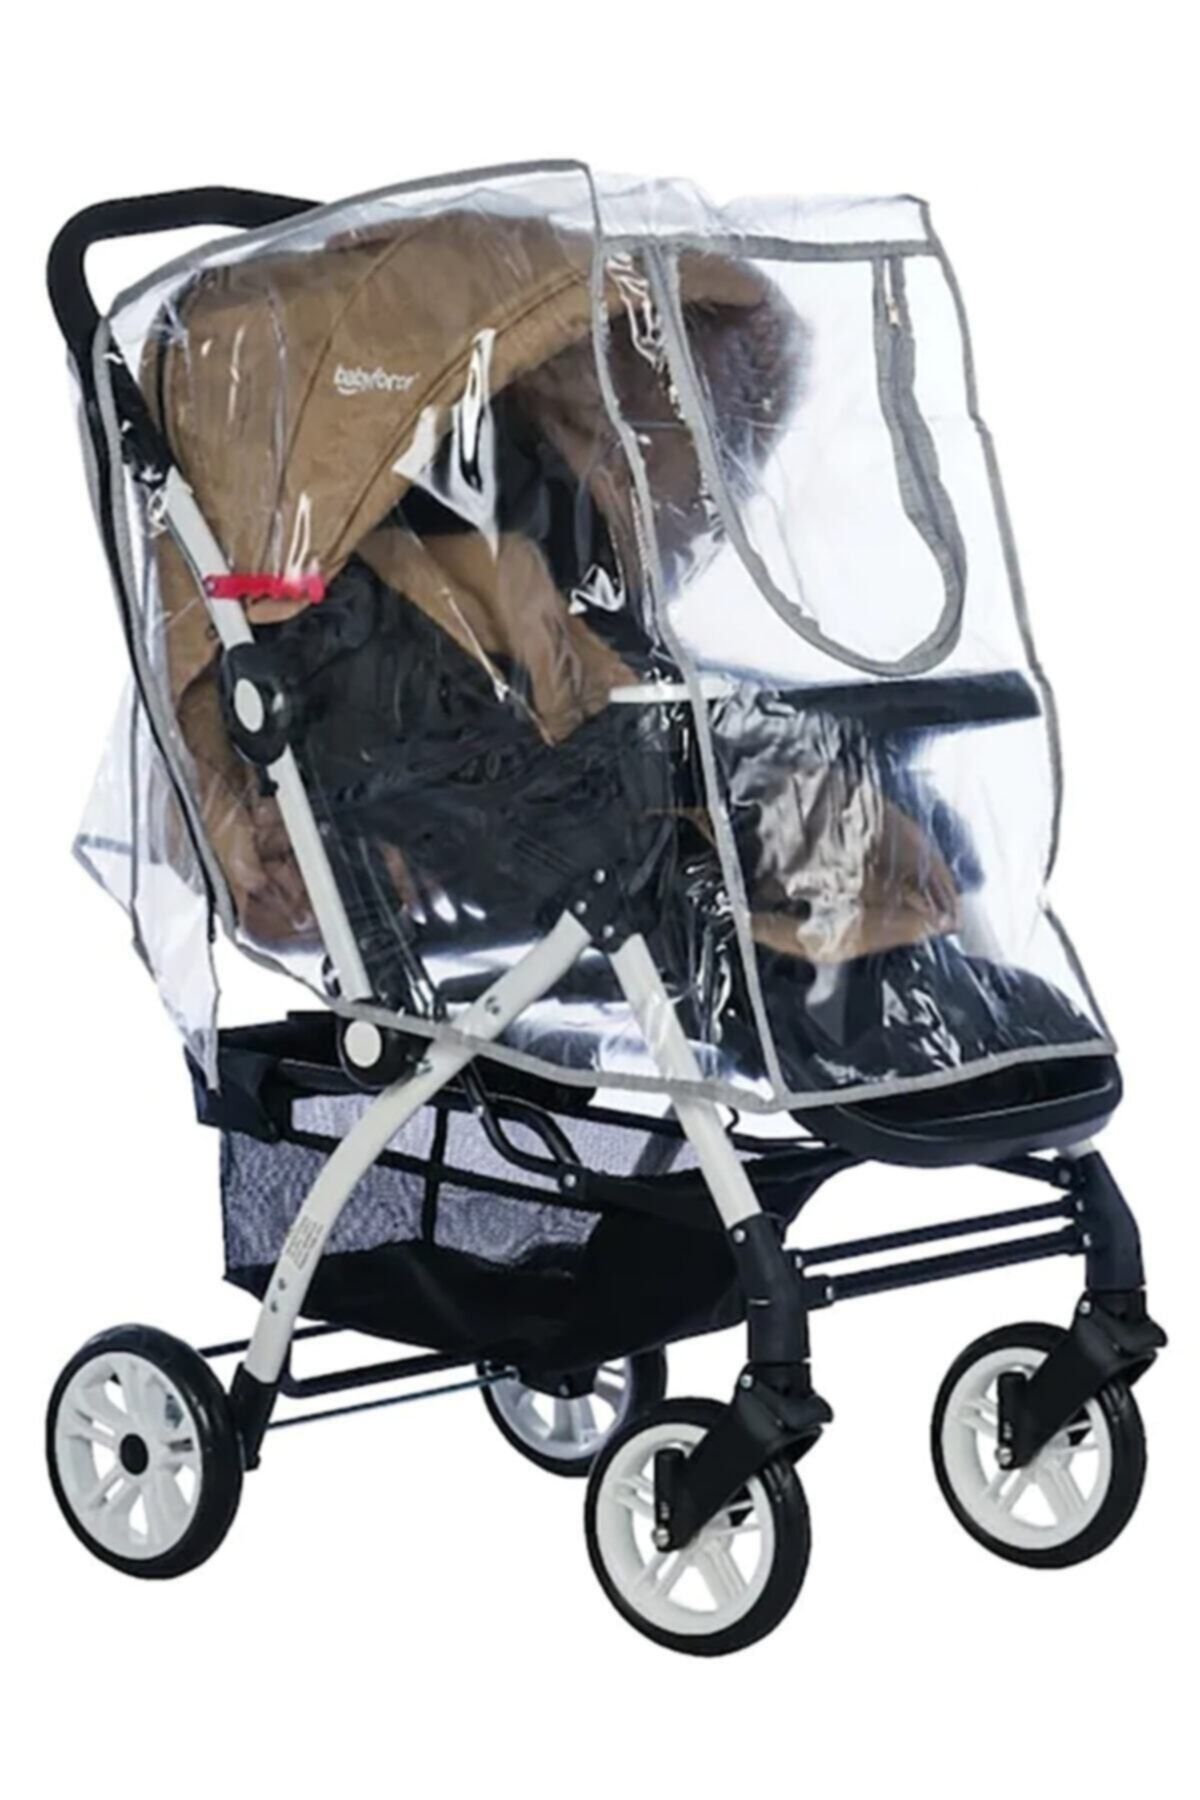 ALDEBA Lüks Fermuarlı Çift Yonlü Baston Puset Travel Sistem Bebek Arabası Yağmurluğu Siyah